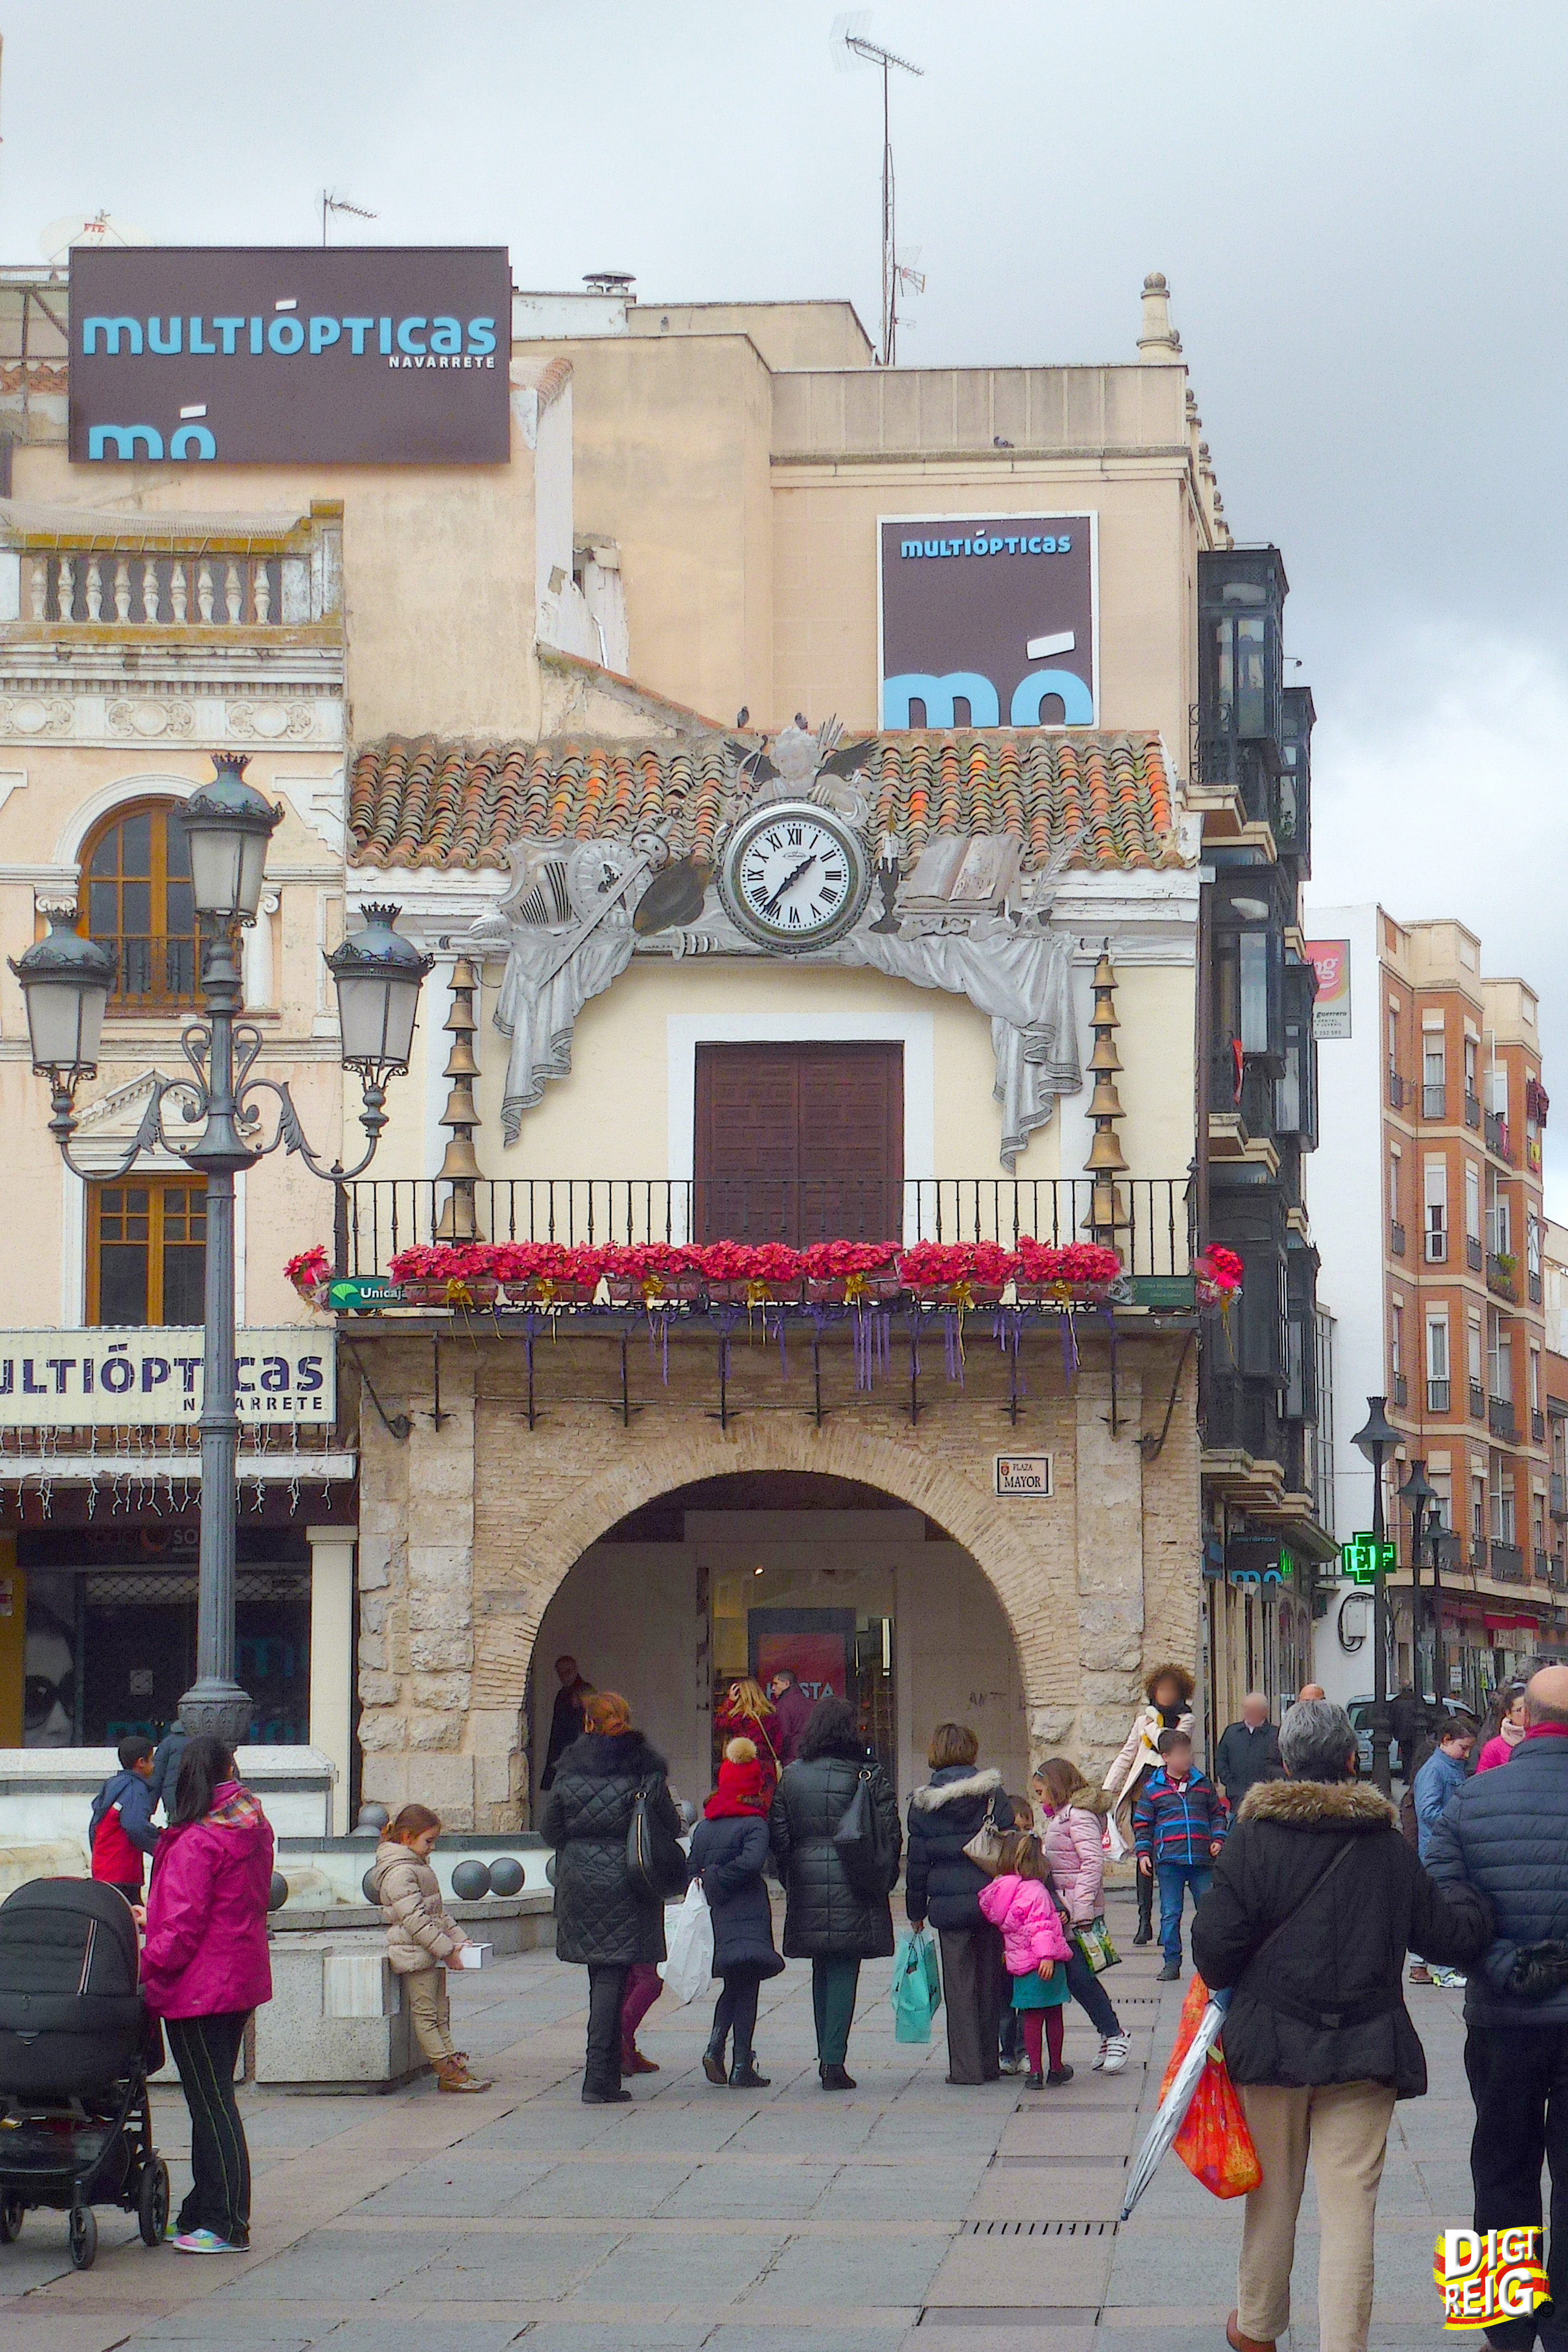 Foto: Casa del Arco con el Reloj Carillón, en la Plaza Mayor. - Ciudad Real (Castilla La Mancha), España